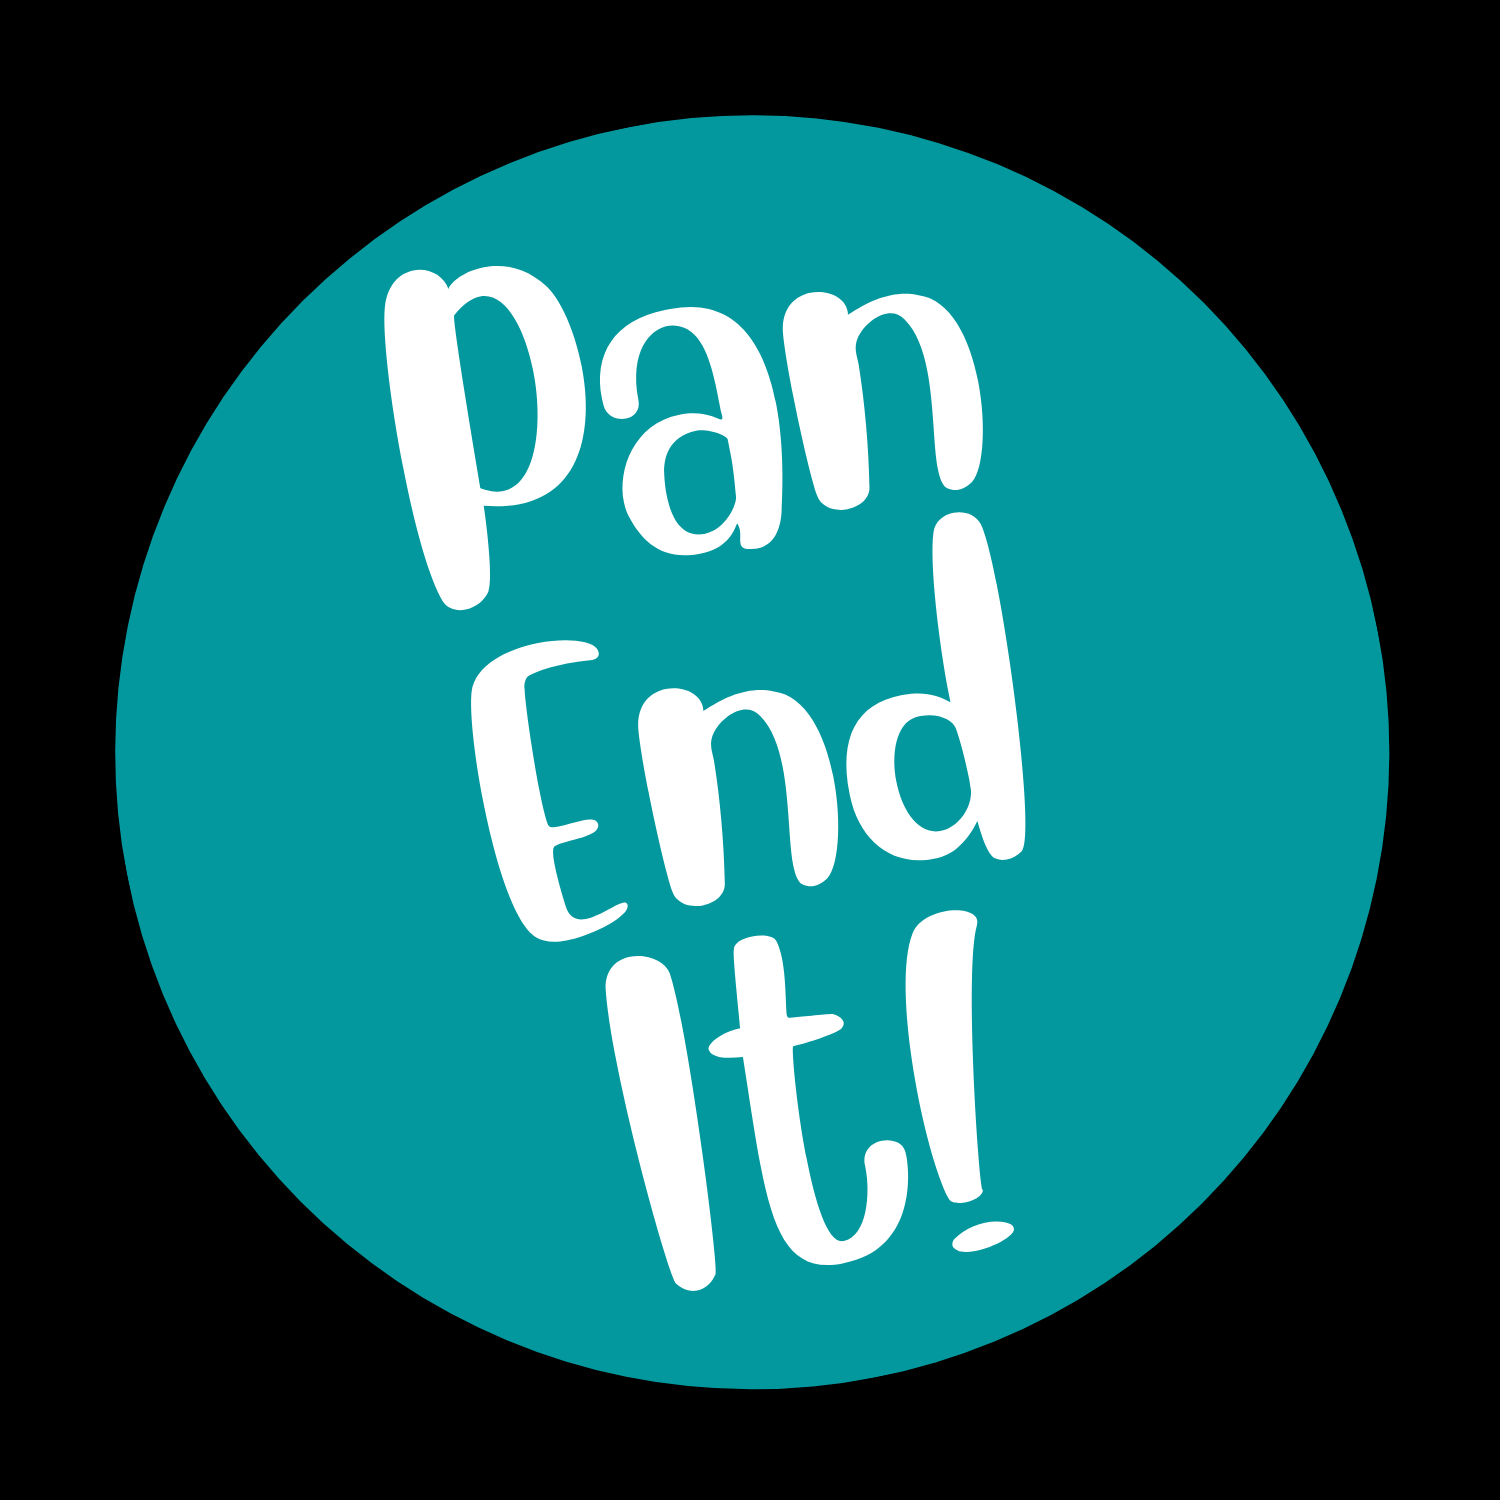 Pan End It!